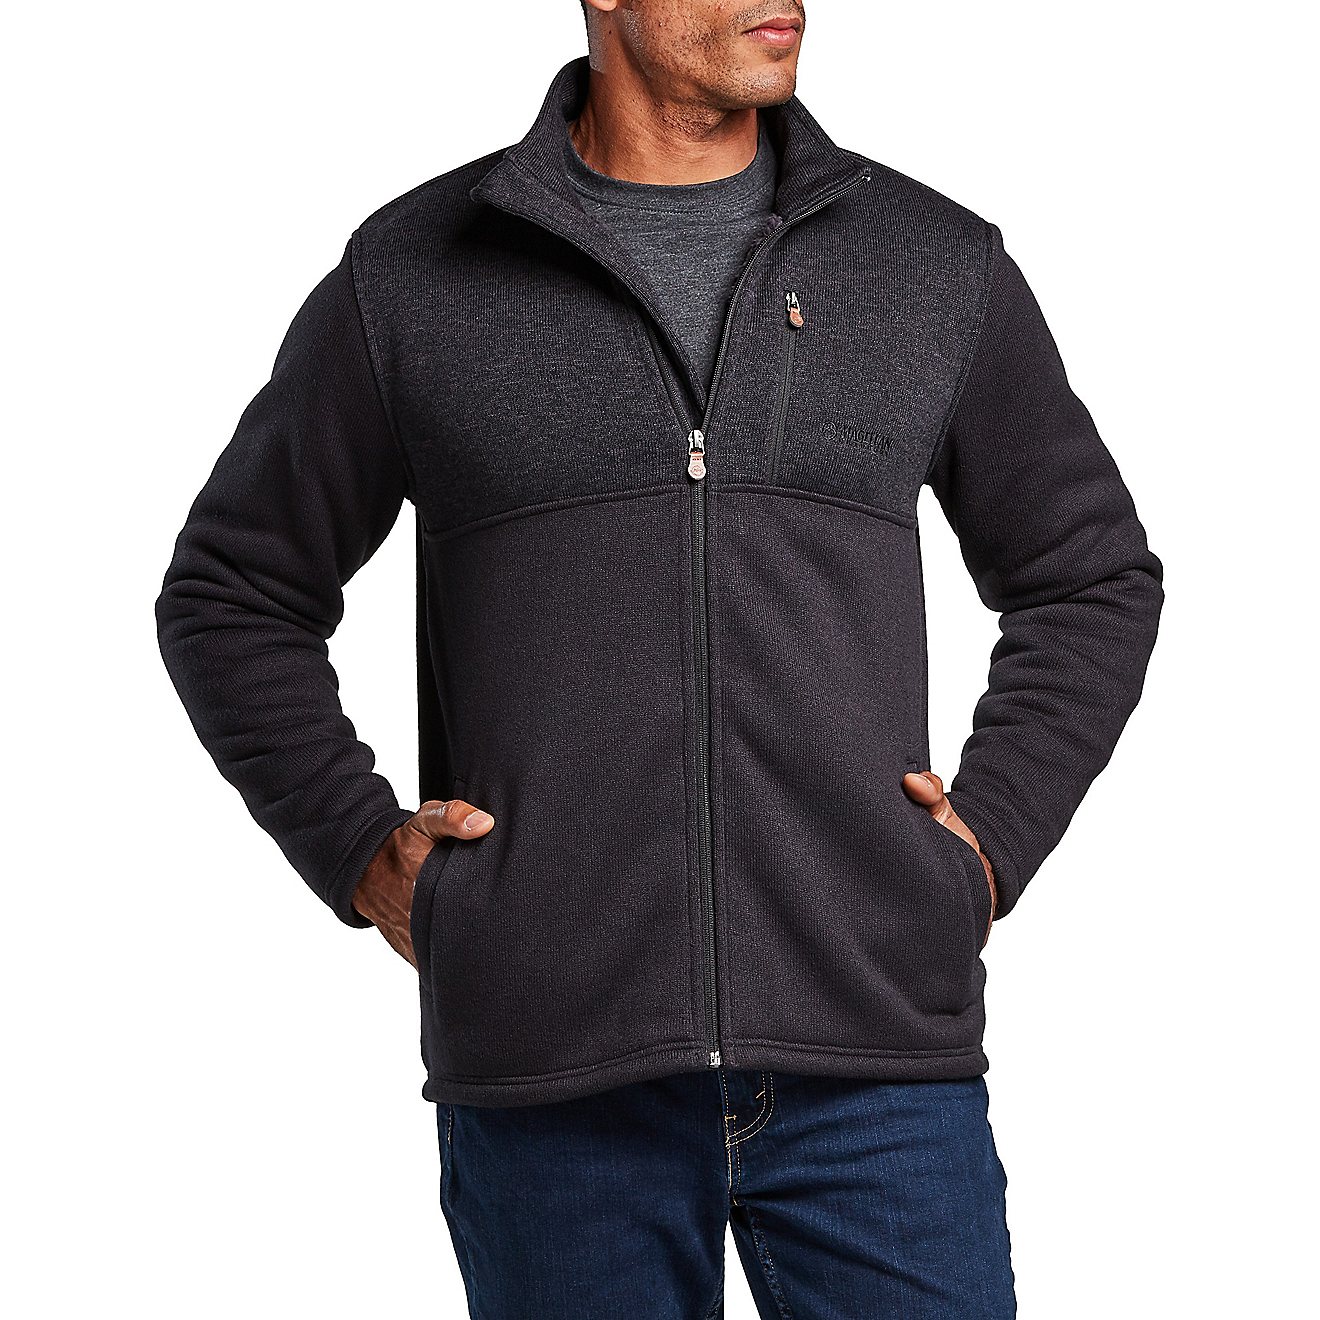 Magellan Outdoors Men's Sweater Fleece Jacket                                                                                    - view number 1